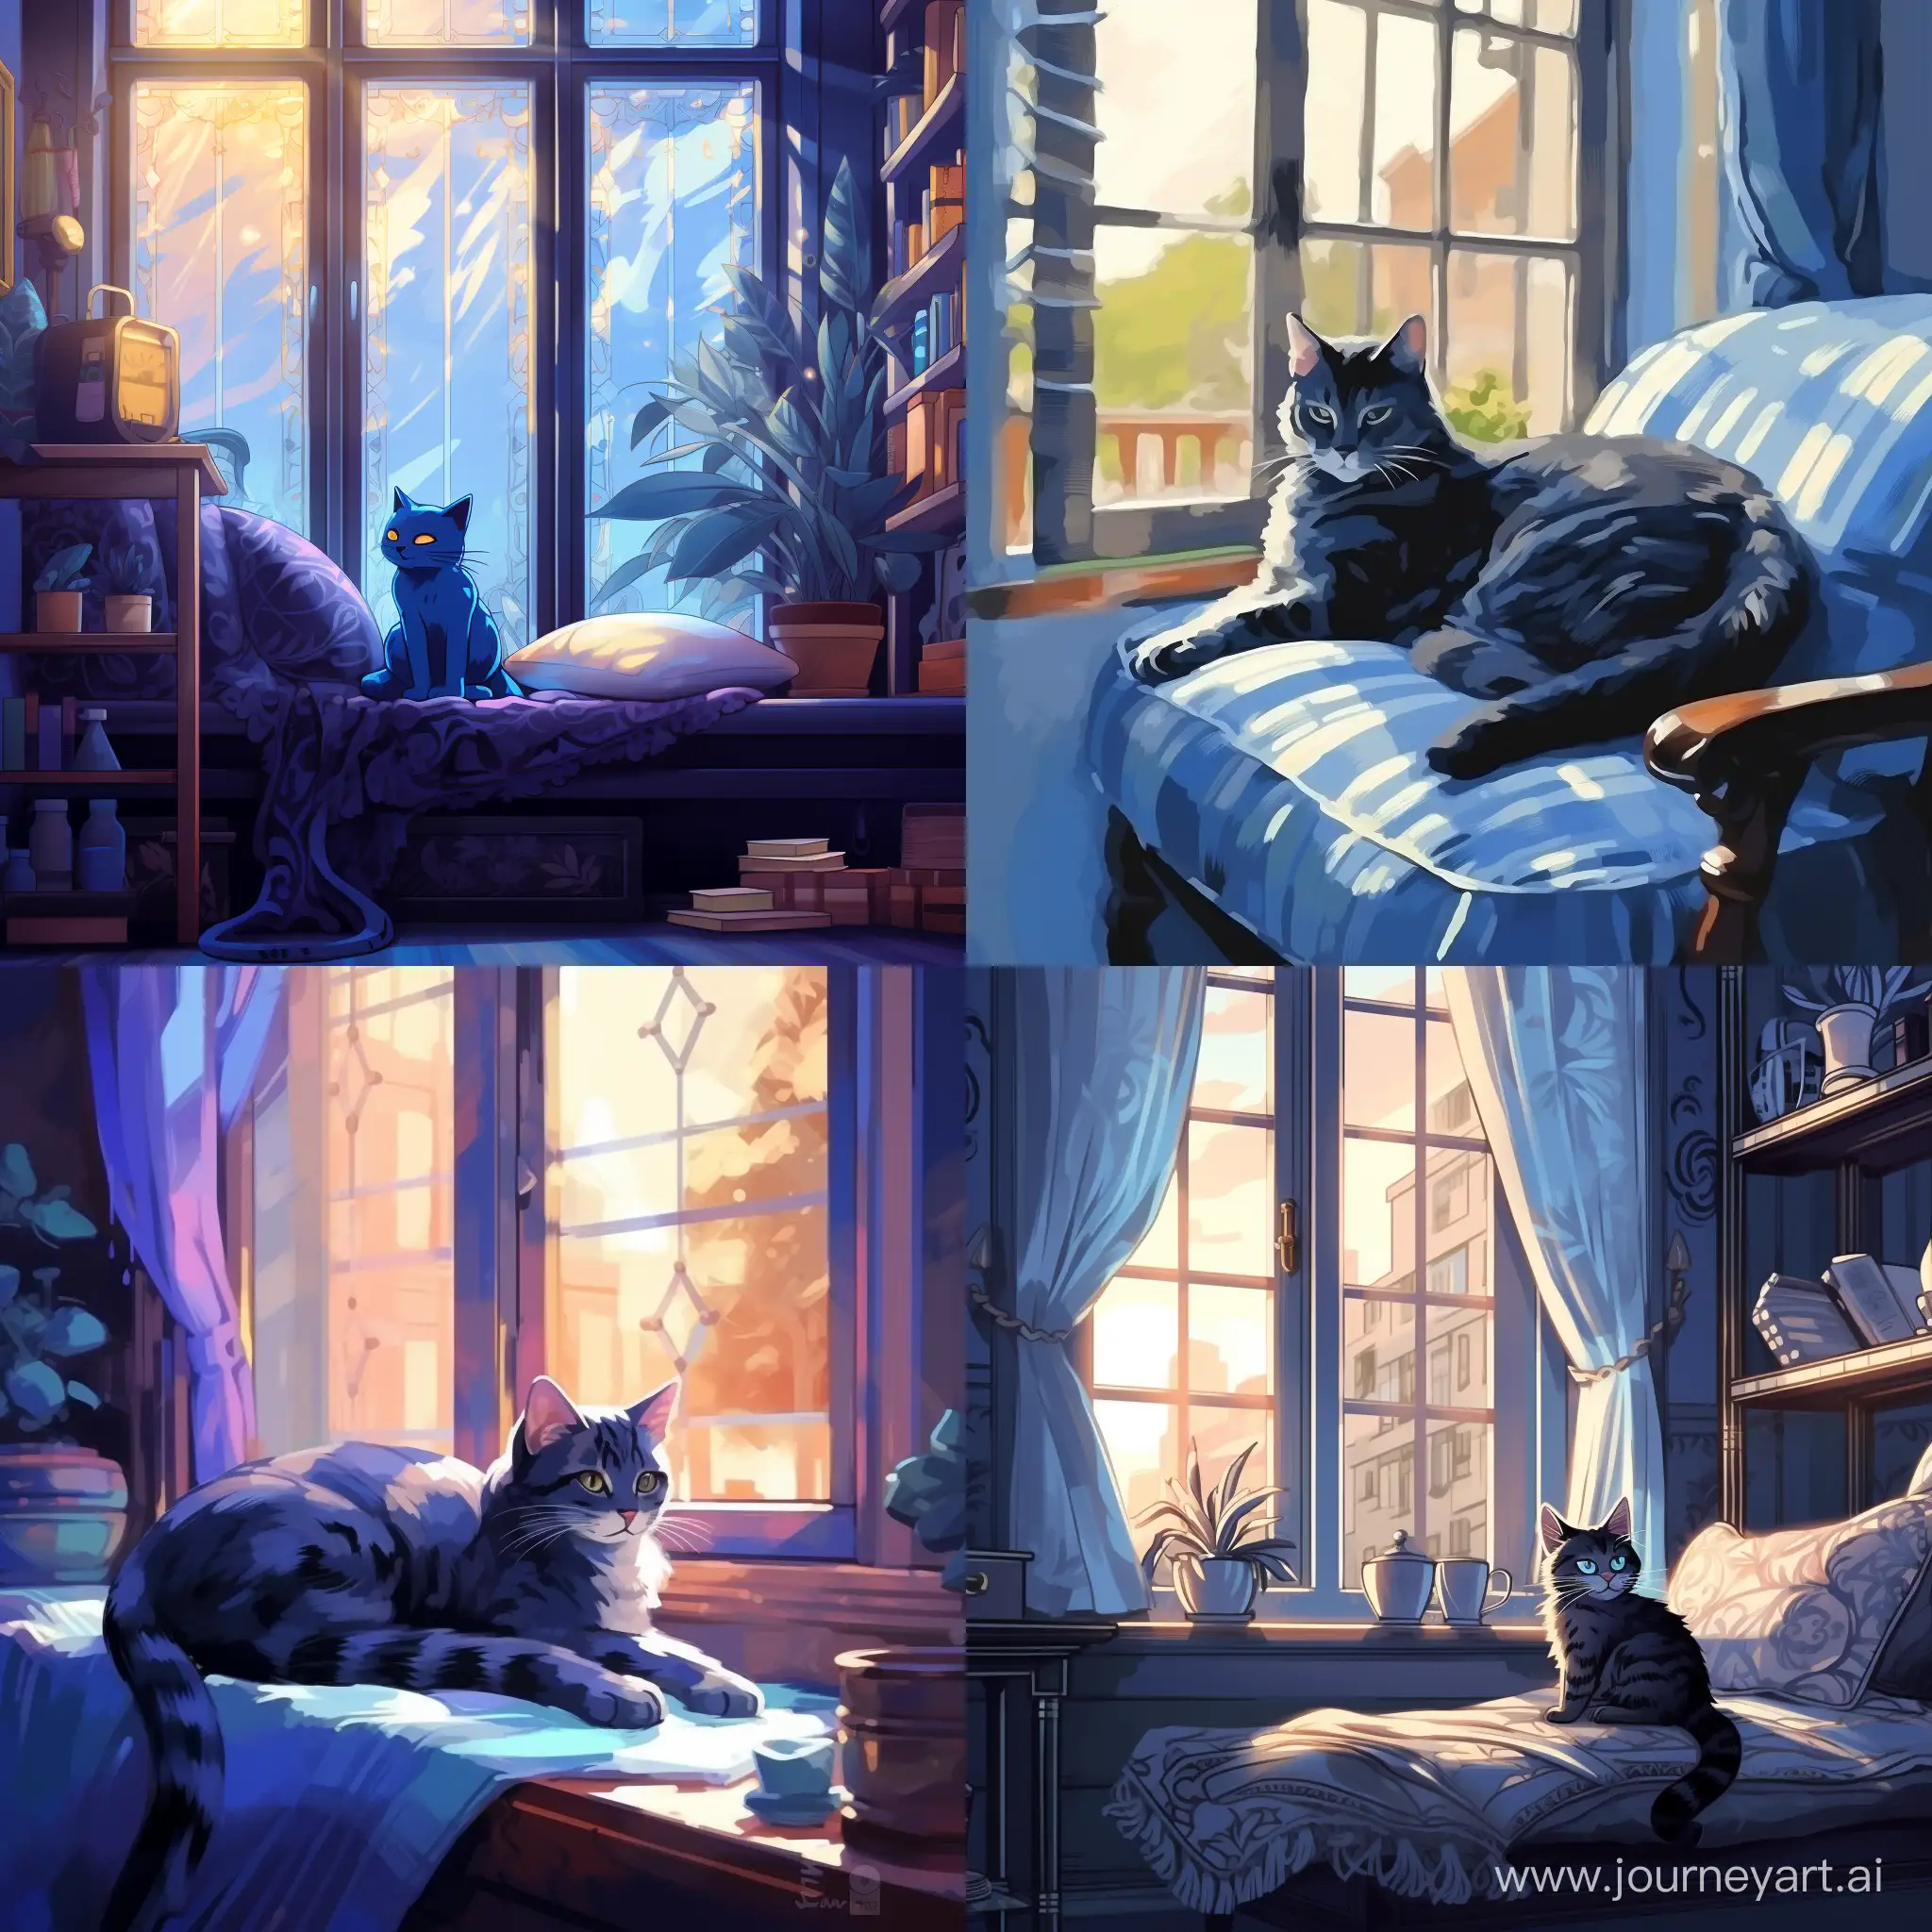 cool color palette, голубая кошка с черными узорами лениво разлеглась на фоне окна, мягкий свет проникает через окна отбрасывая блики на кошку